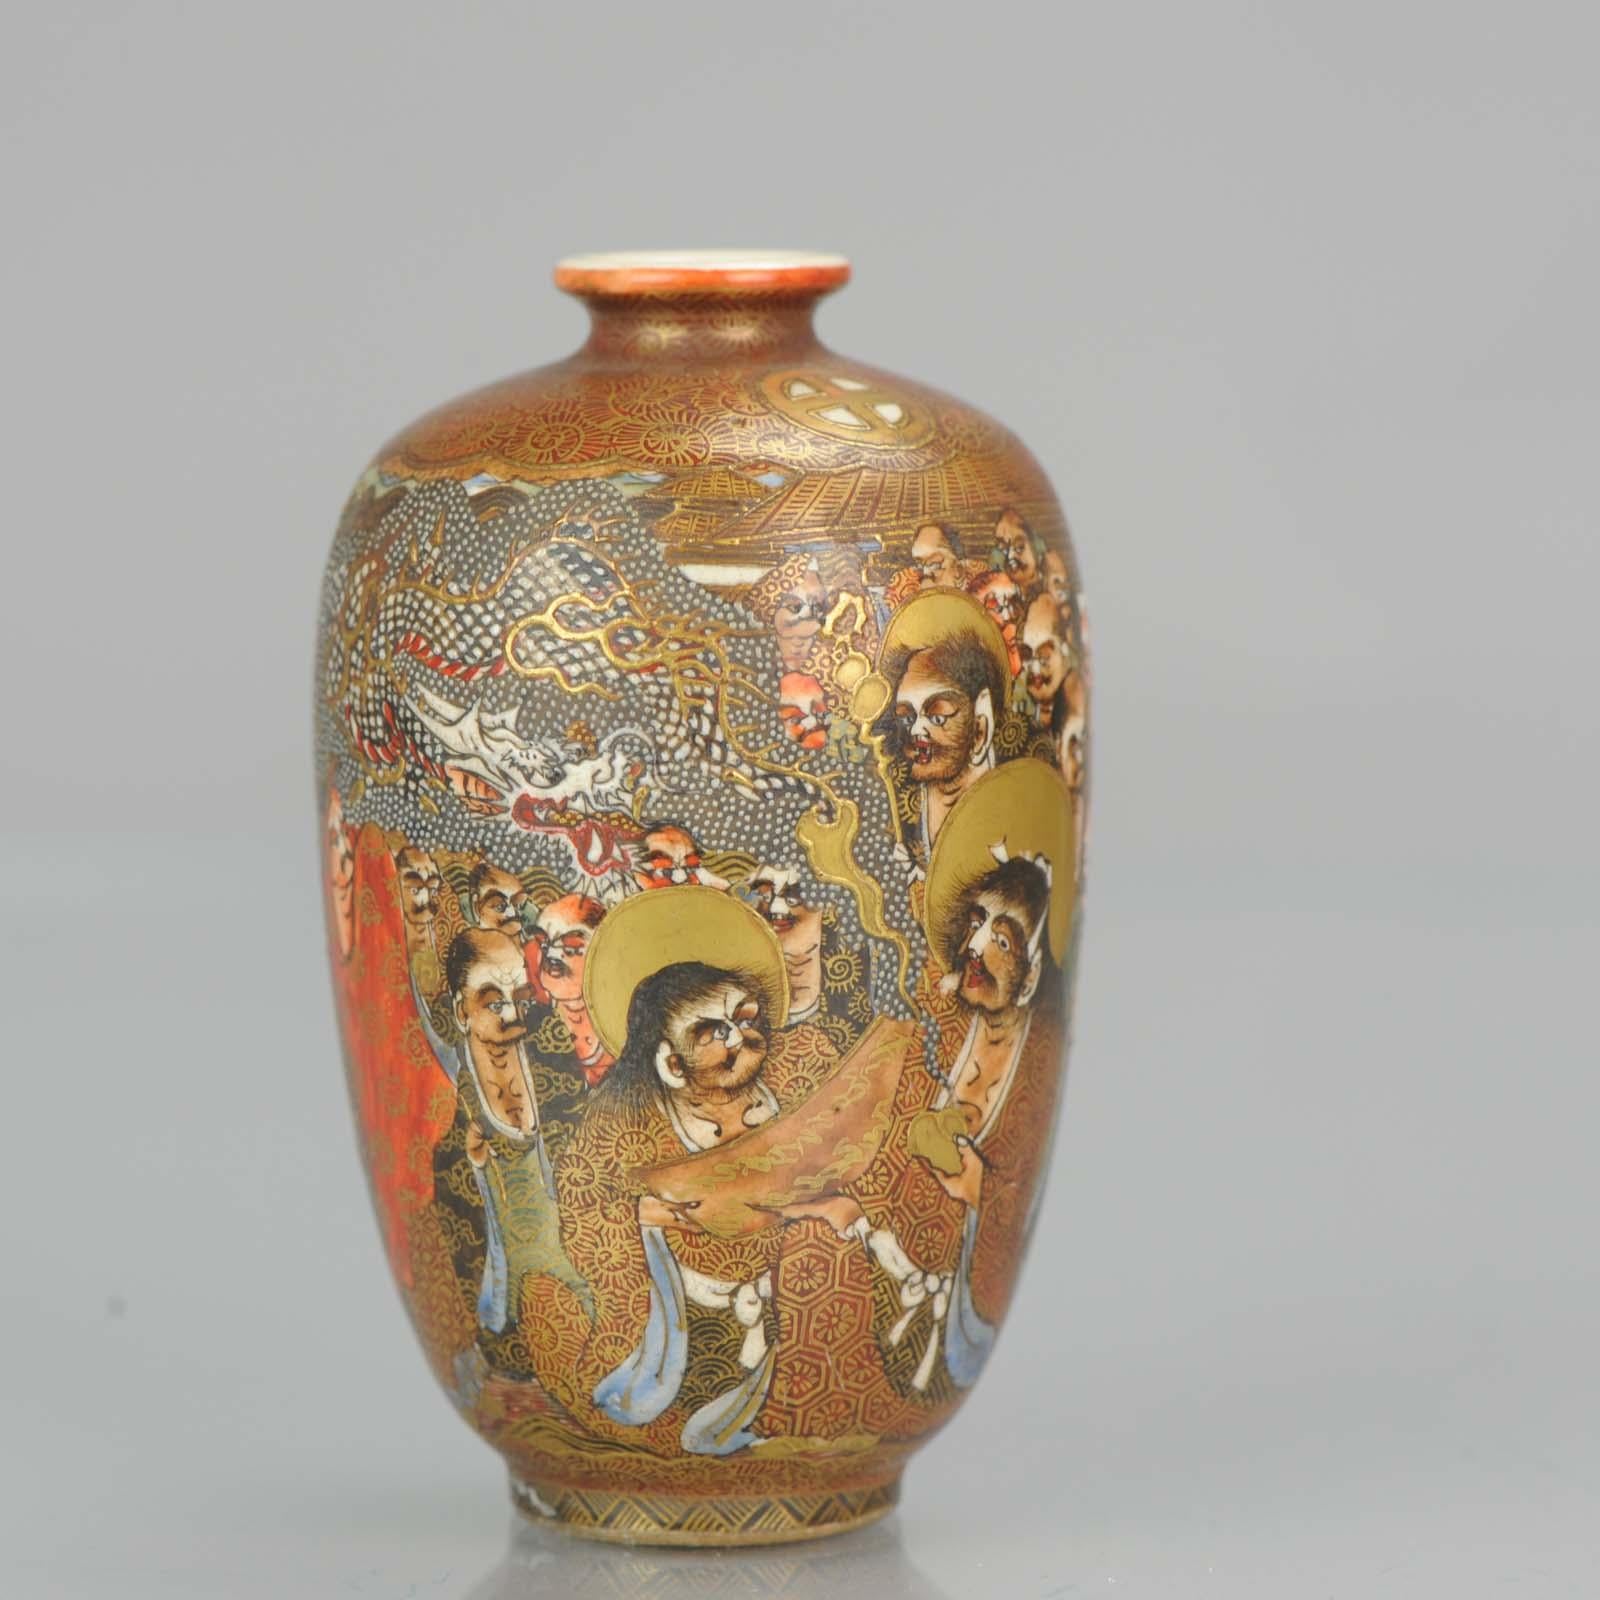 Fabelhafte japanische Satsuma-Vase.

Markierte Basis:
??? Dai-Nippon ?? Satsuma ?? Kikkoen 2

Bedingung
Gesamtzustand perfekt. Größe 90 x 55 mm

Zeitraum
Meiji-Periode (1867-1912).
  